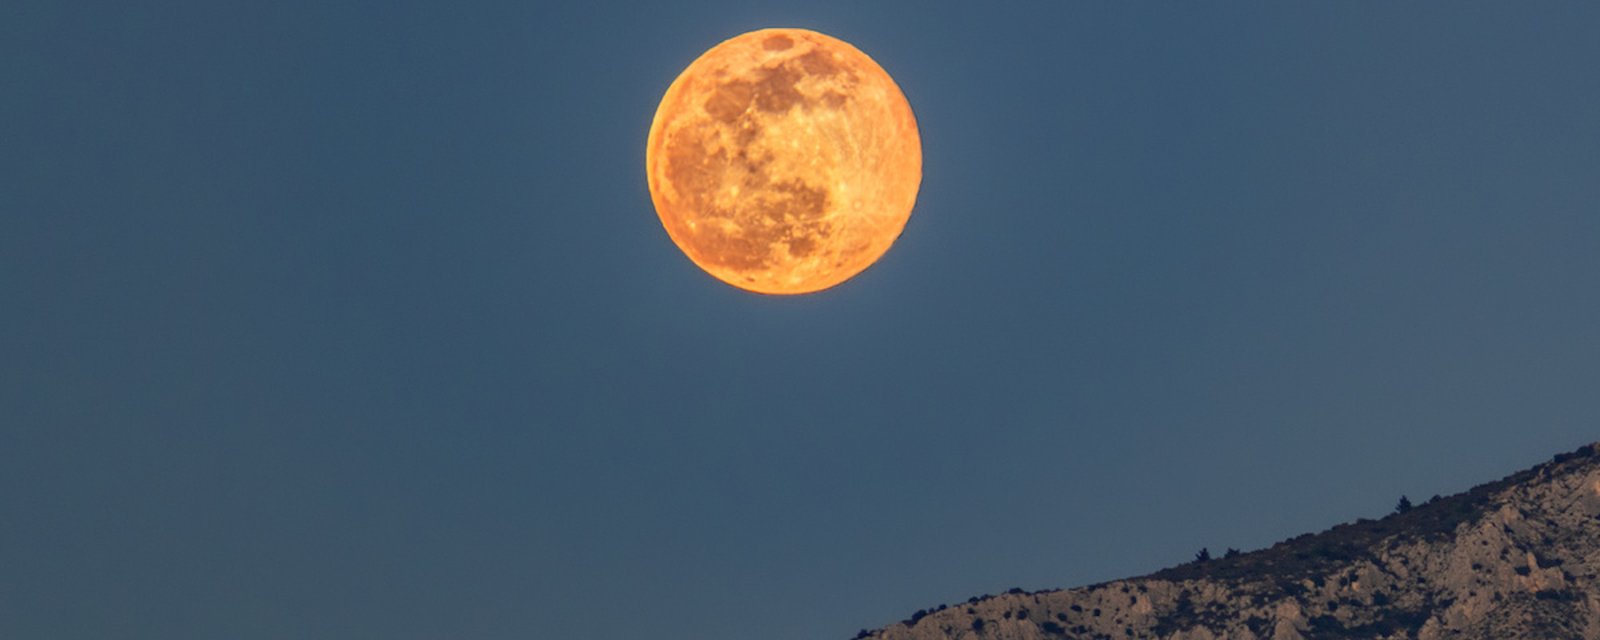 Ce soir, levez les yeux au ciel pour admirer la super Lune rose!